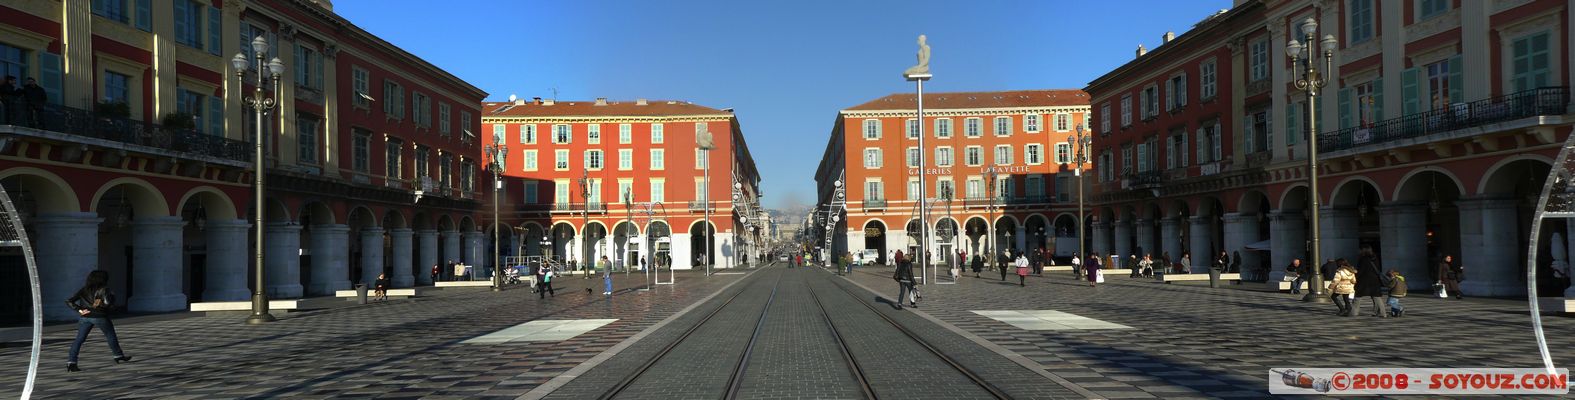 Nice - Place Massena - panorama
Mots-clés: panorama